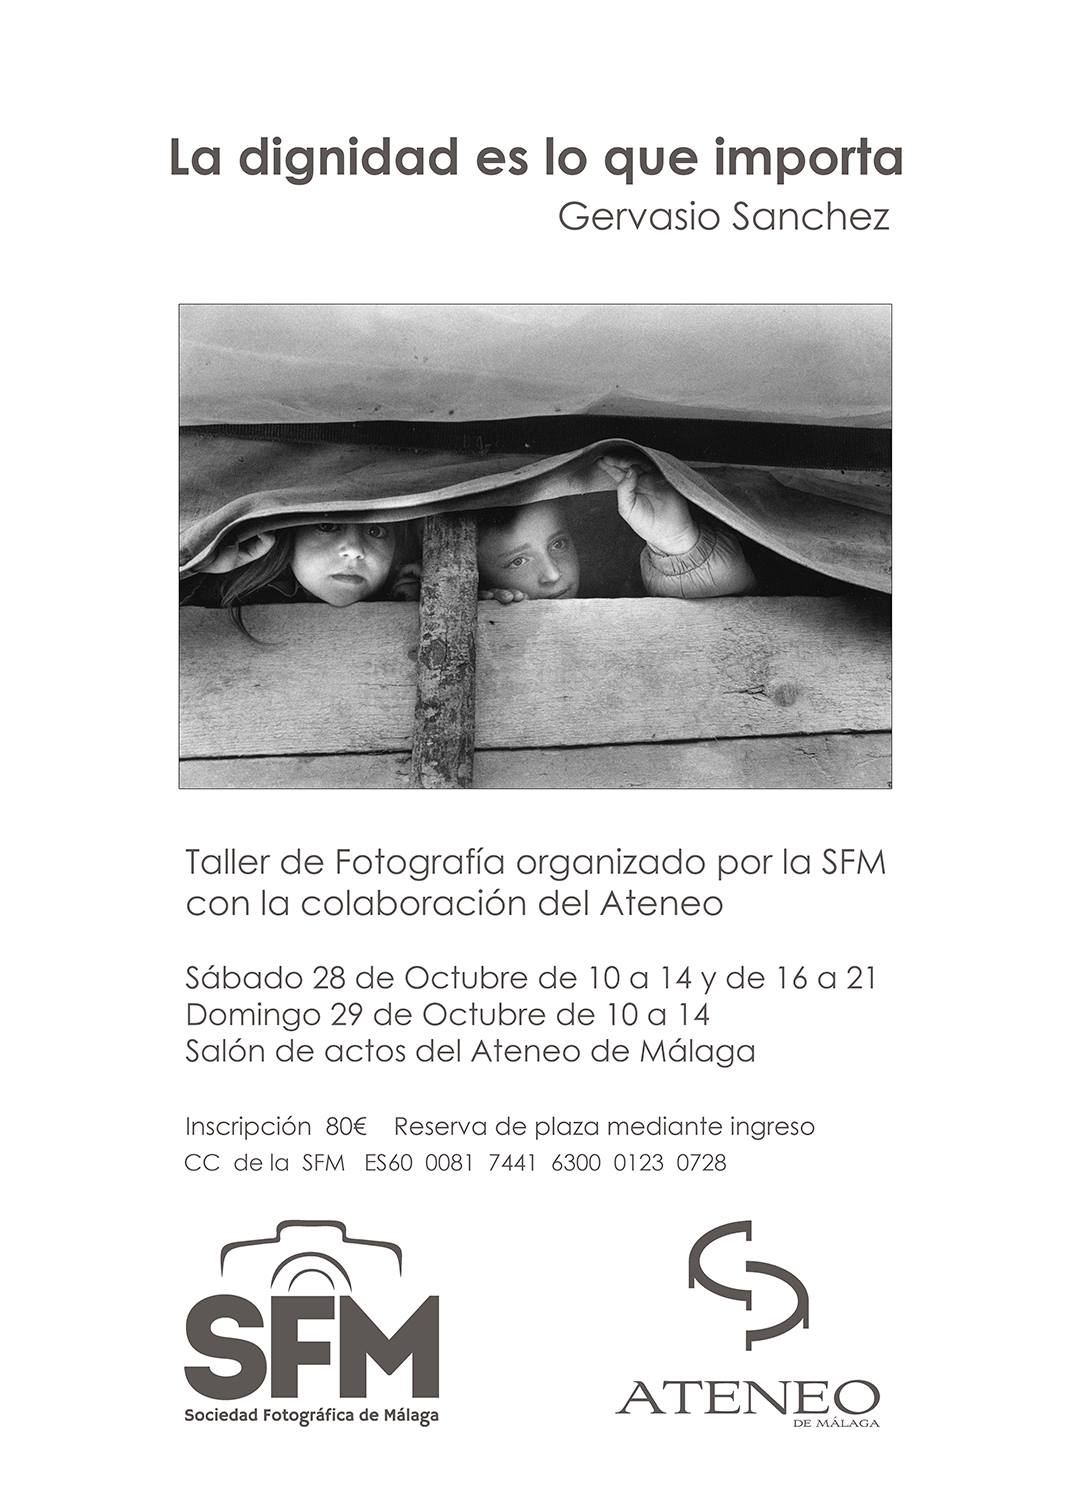 Sociedad Fotográfica de Málaga (SFM) - Taller.jpg